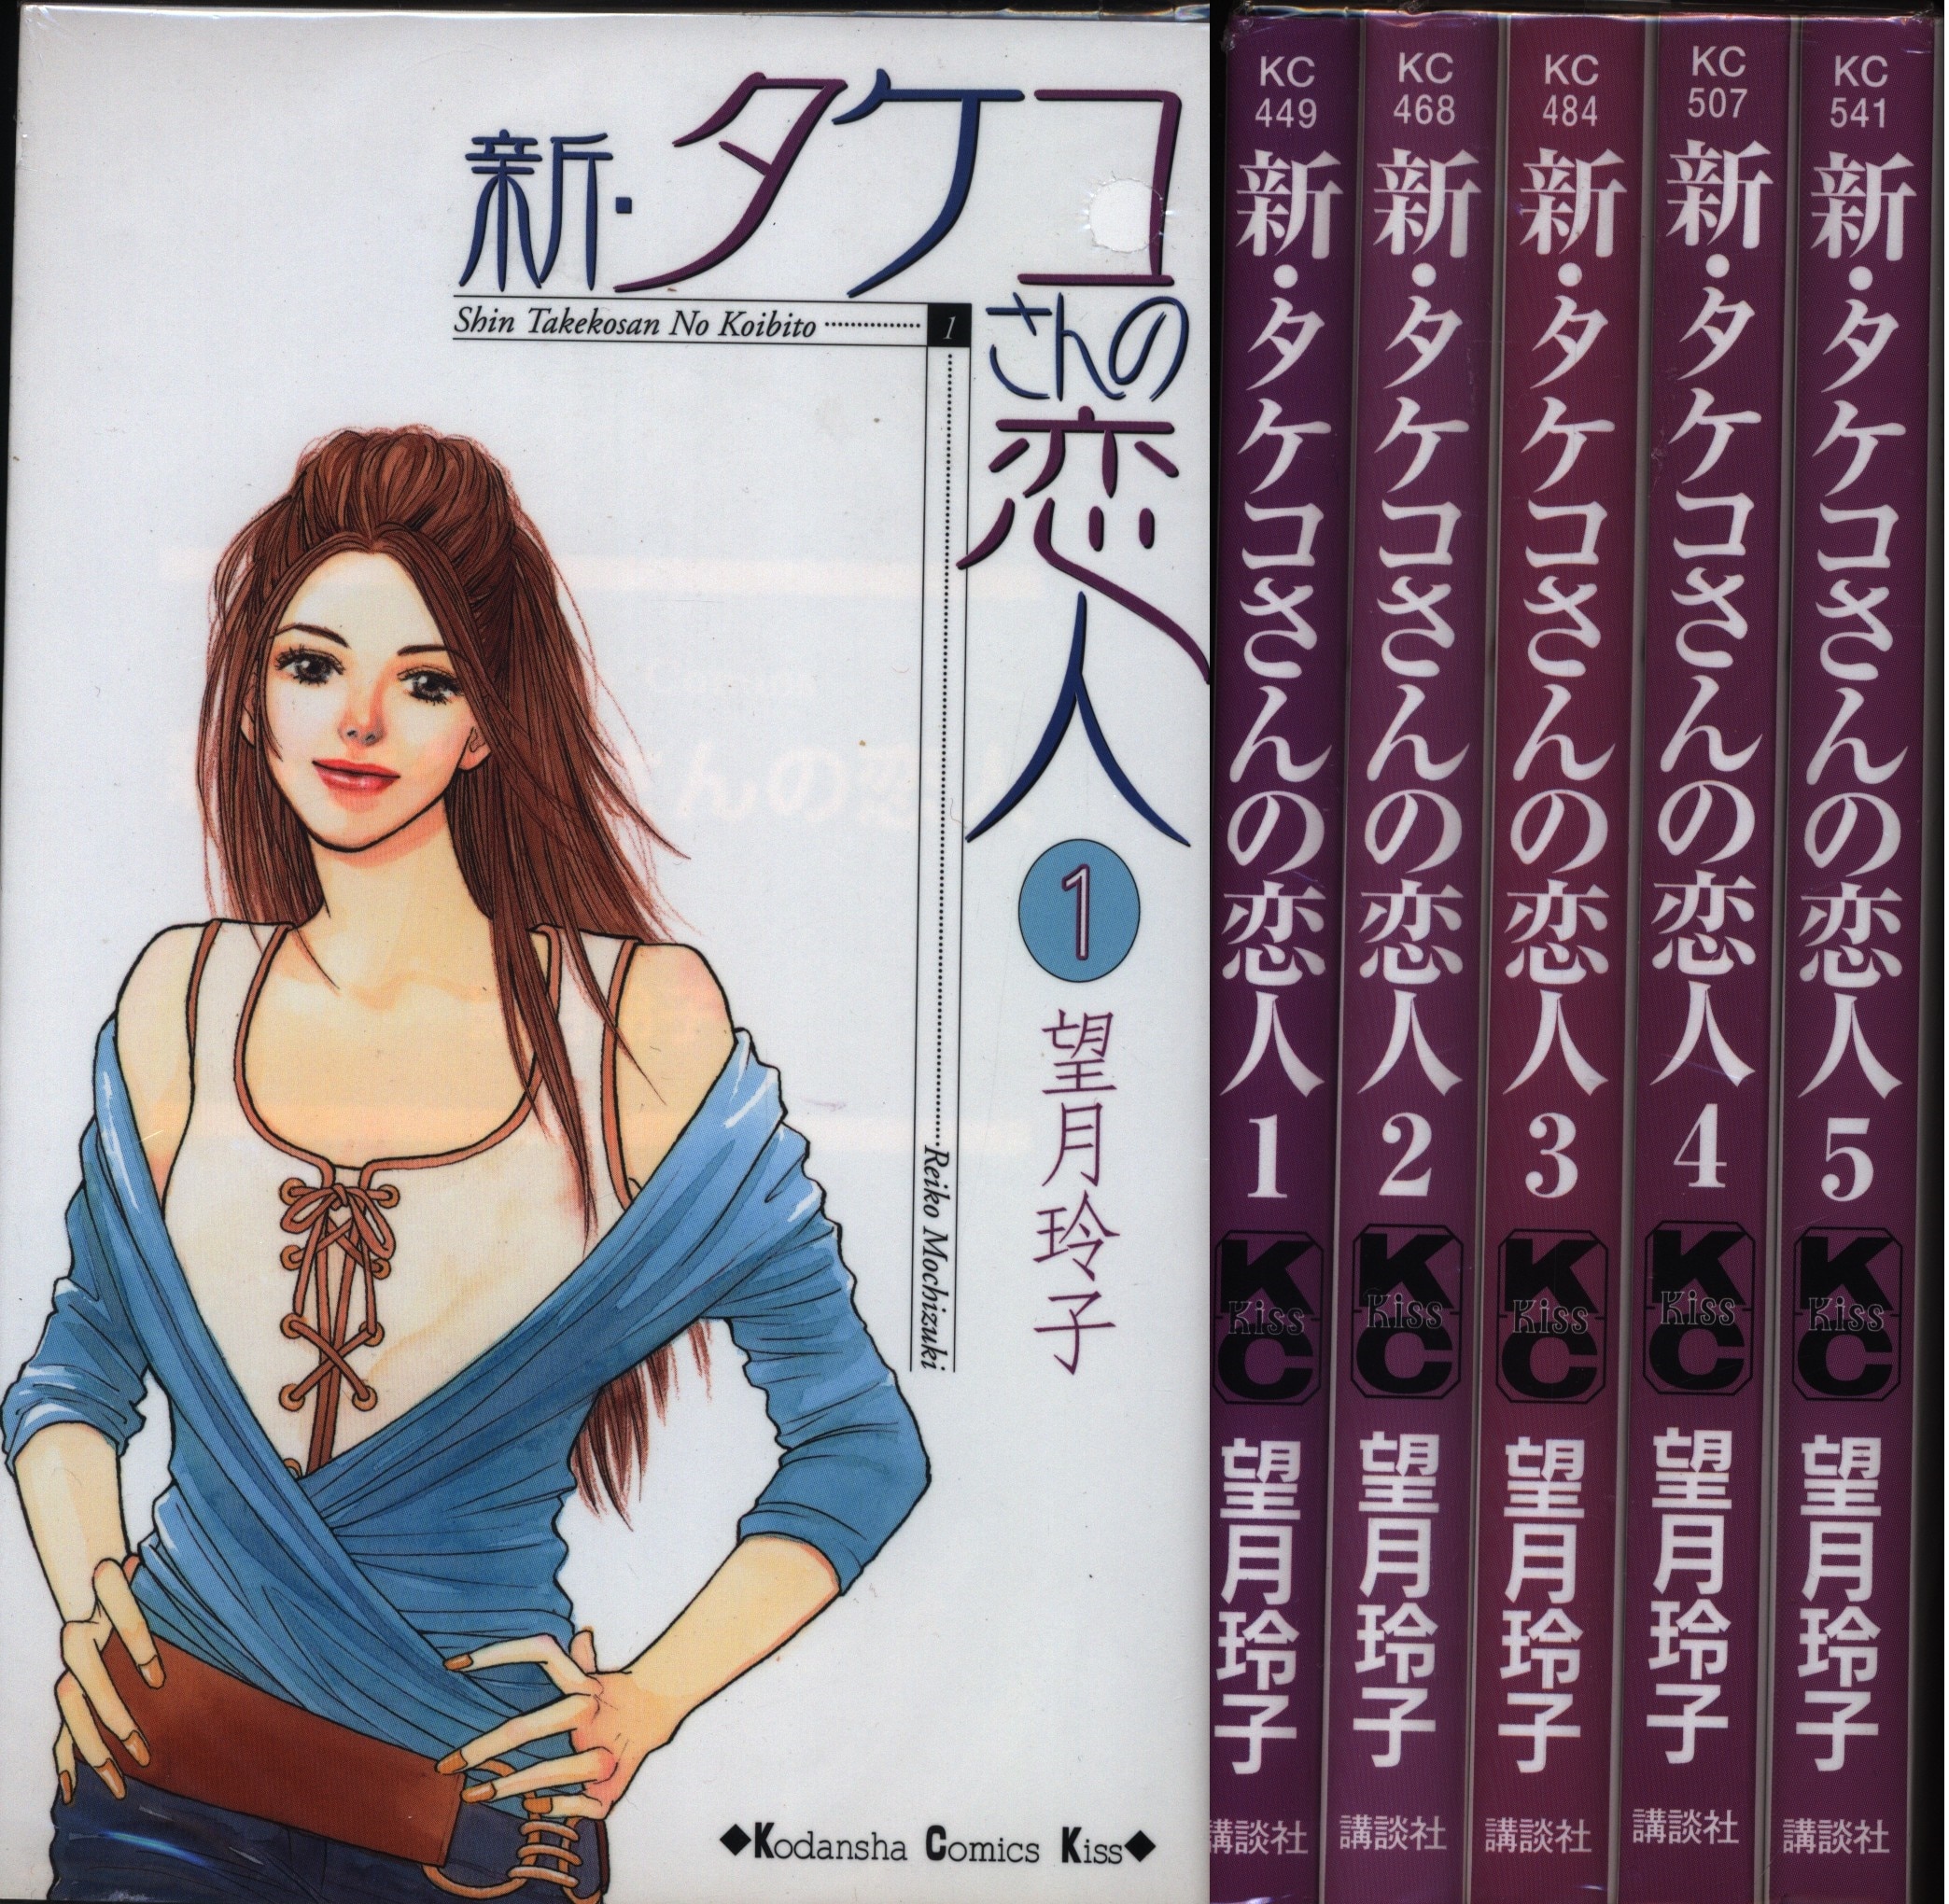 講談社 キスkc 望月玲子 新 タケコさんの恋人 全5巻 セット まんだらけ Mandarake